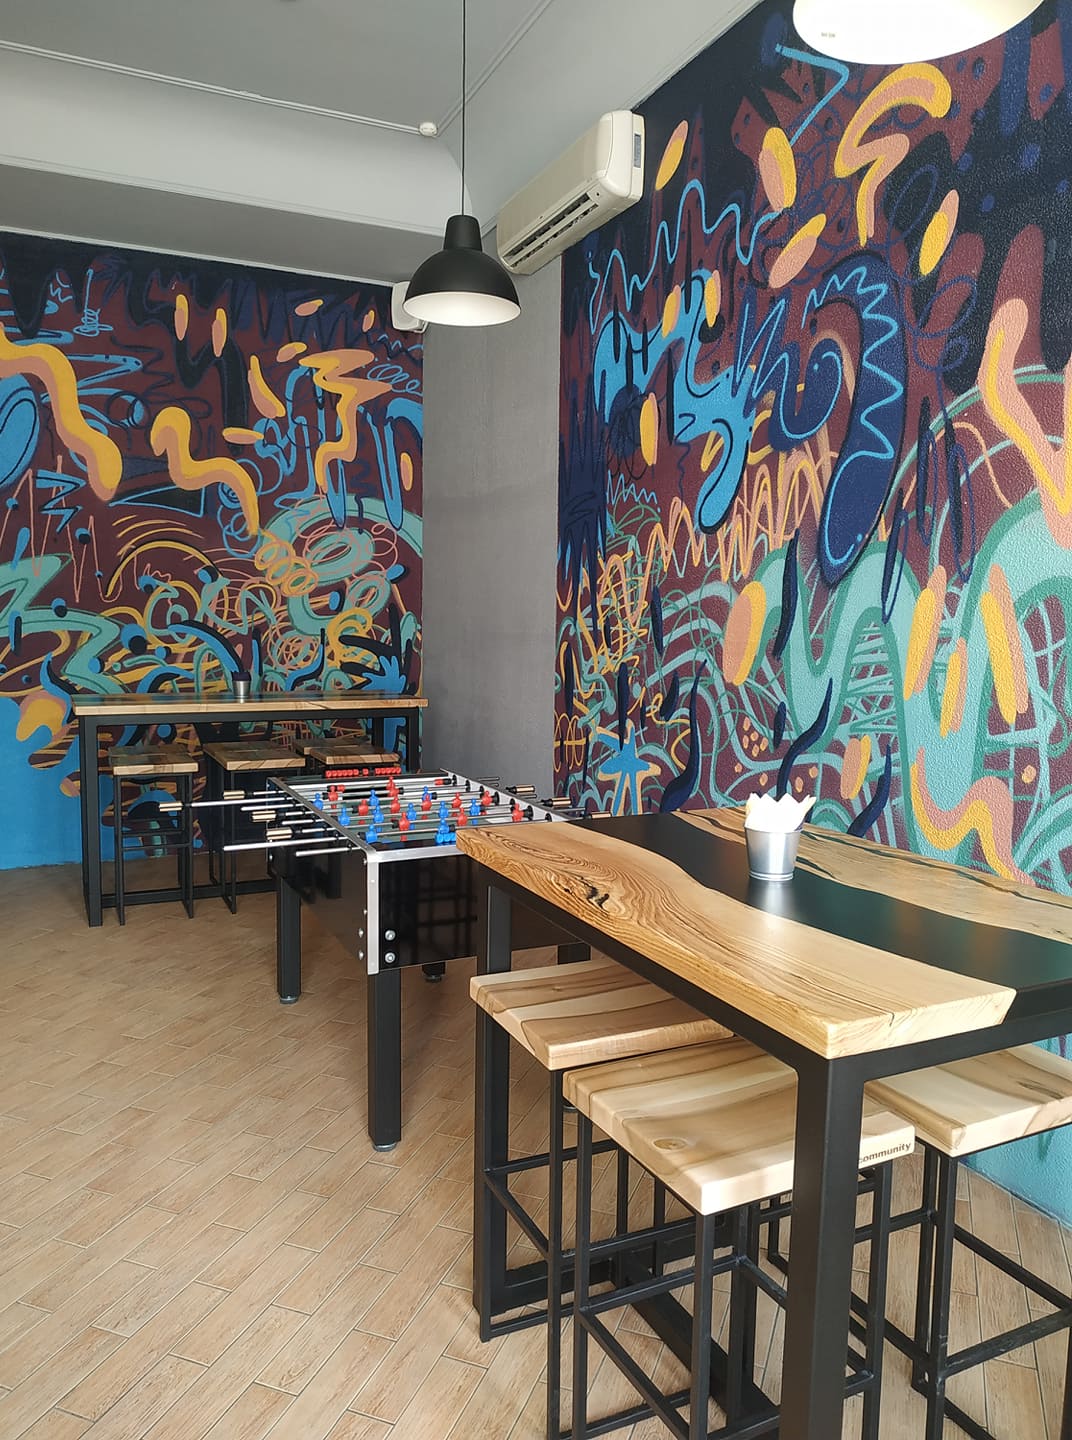 Community новый крафтовый бар в Самаре